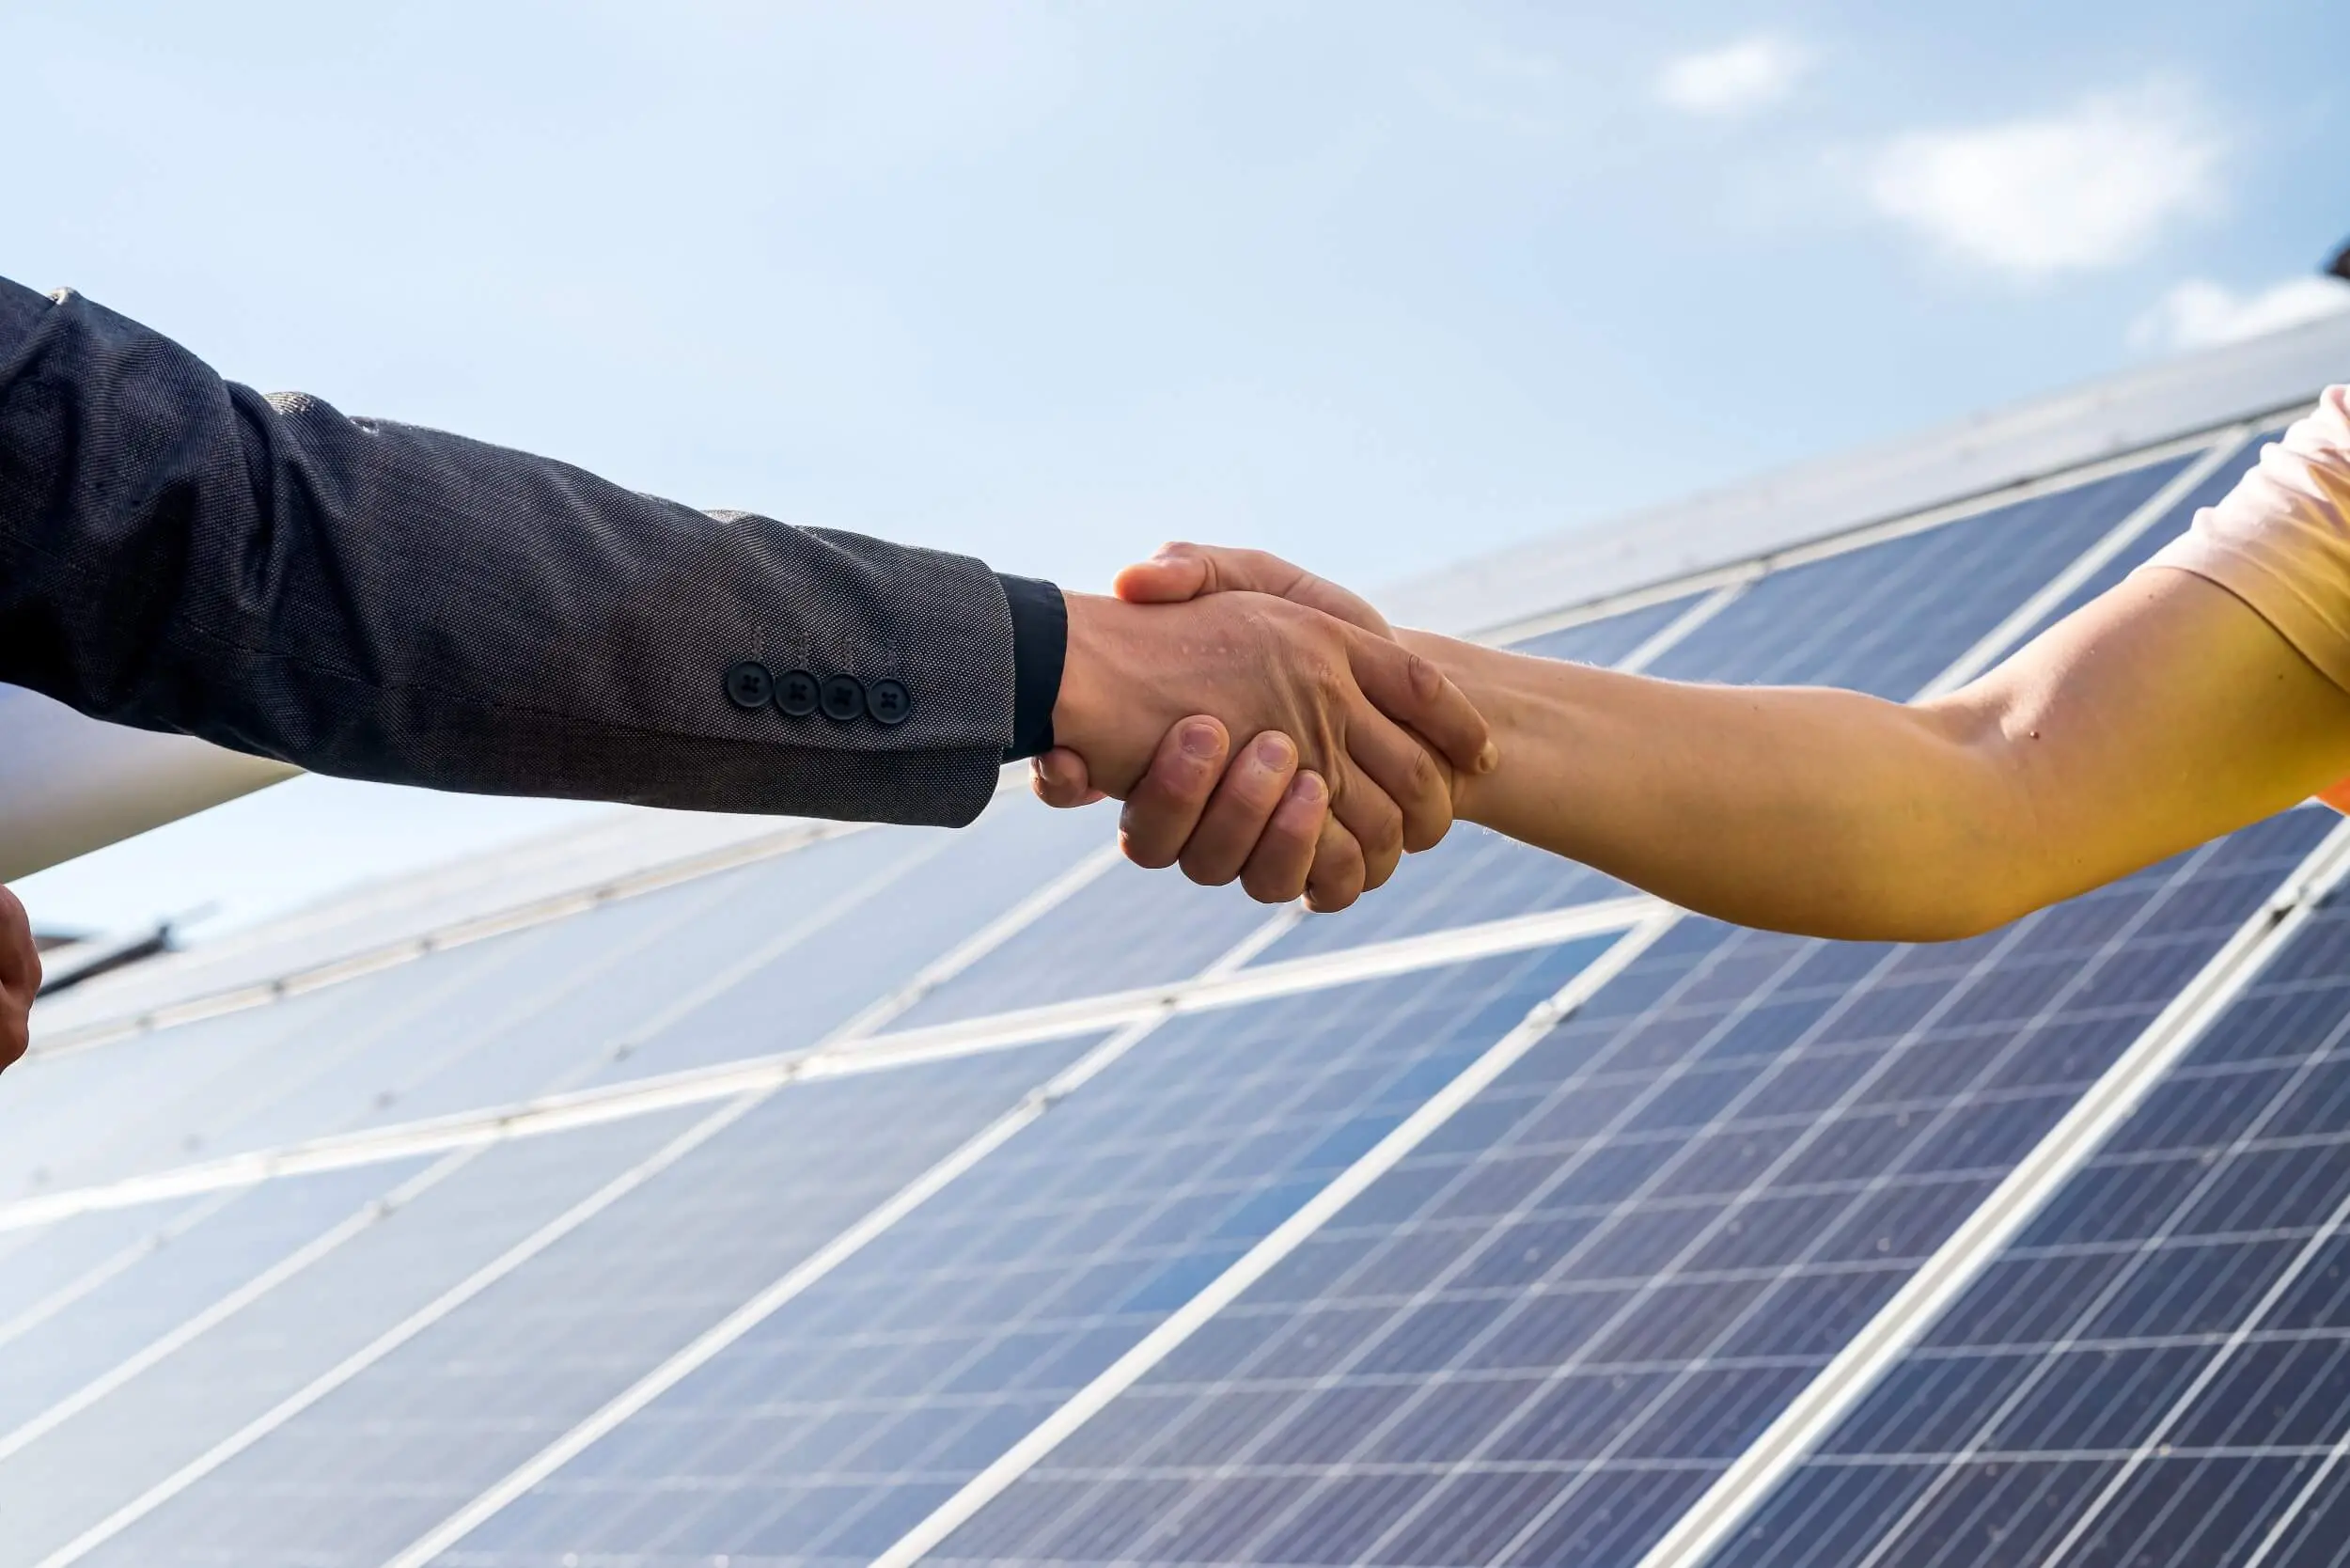 Apuesta por la energía solar en tu negocio y reduce tu factura